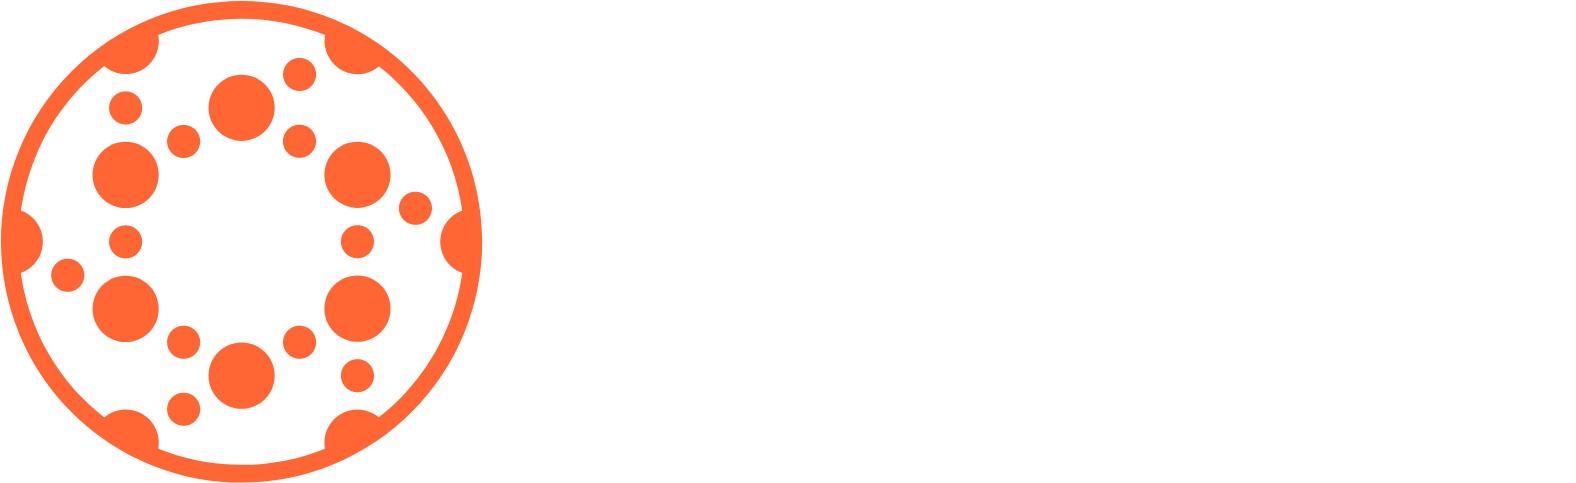 Solid Biosciences
 logo large for dark backgrounds (transparent PNG)